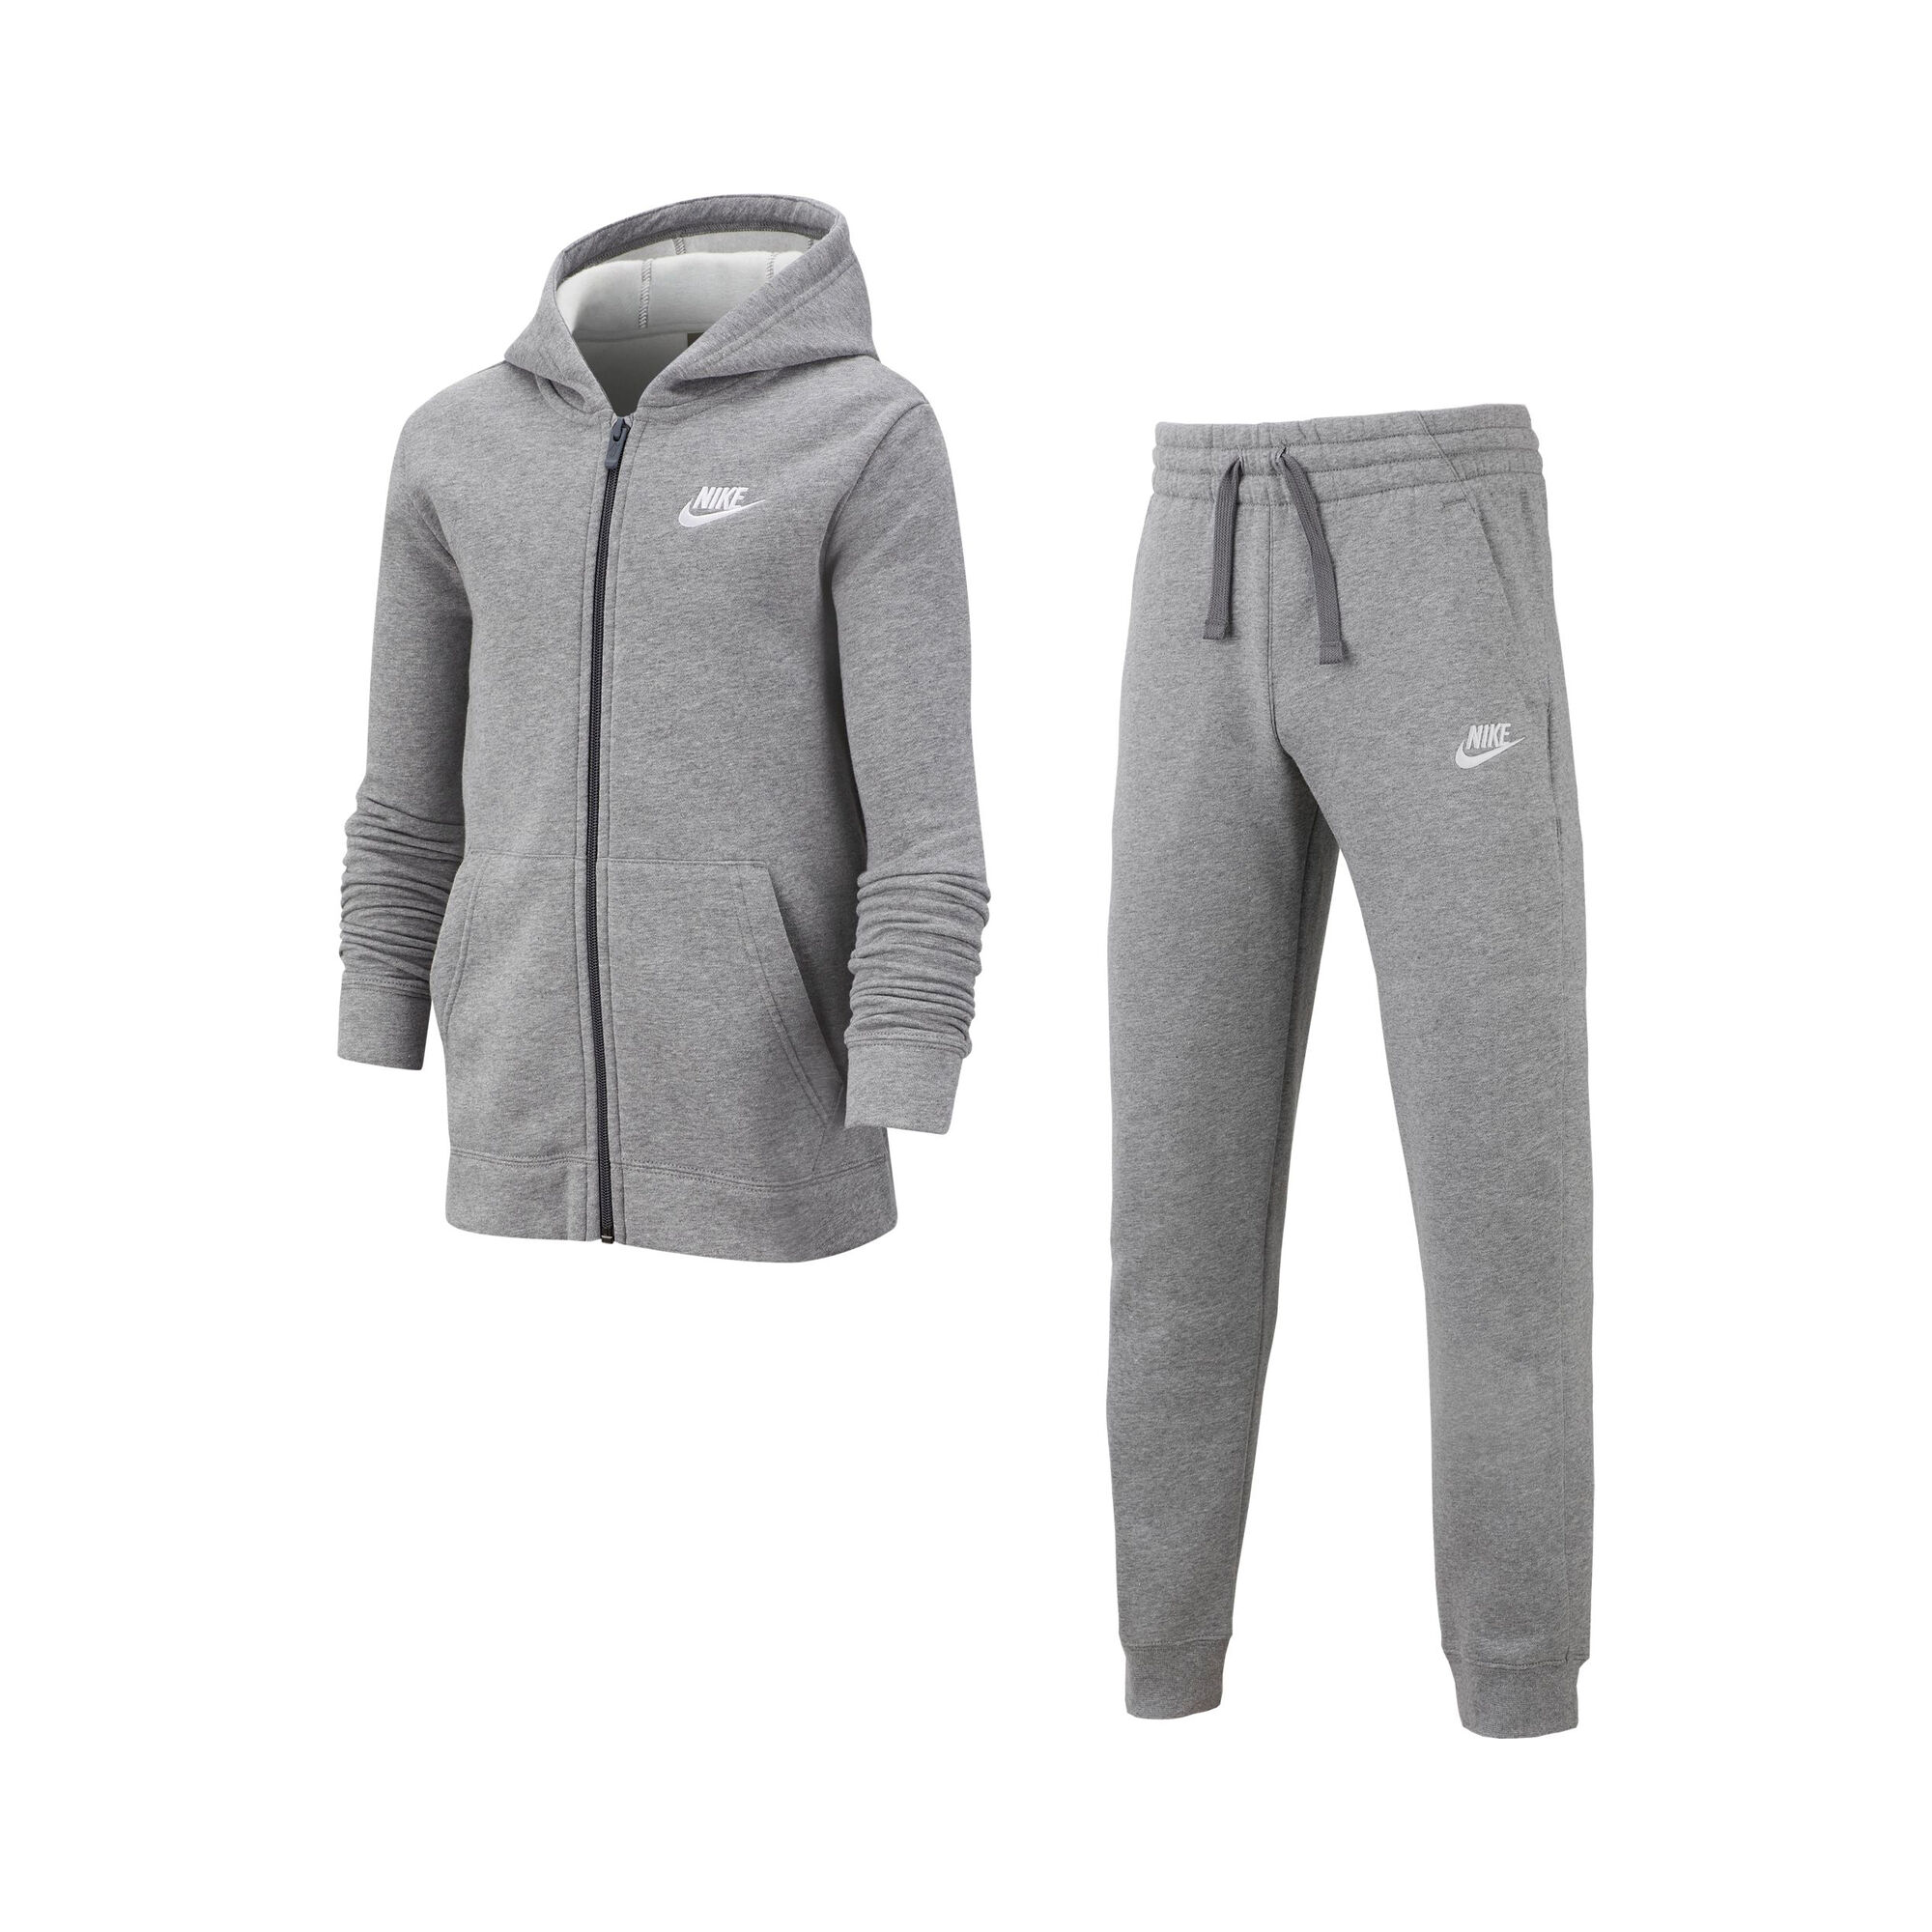 Tennis Jungen Grau, Weiß | Sportswear Point online Trainingsanzug kaufen CH Nike